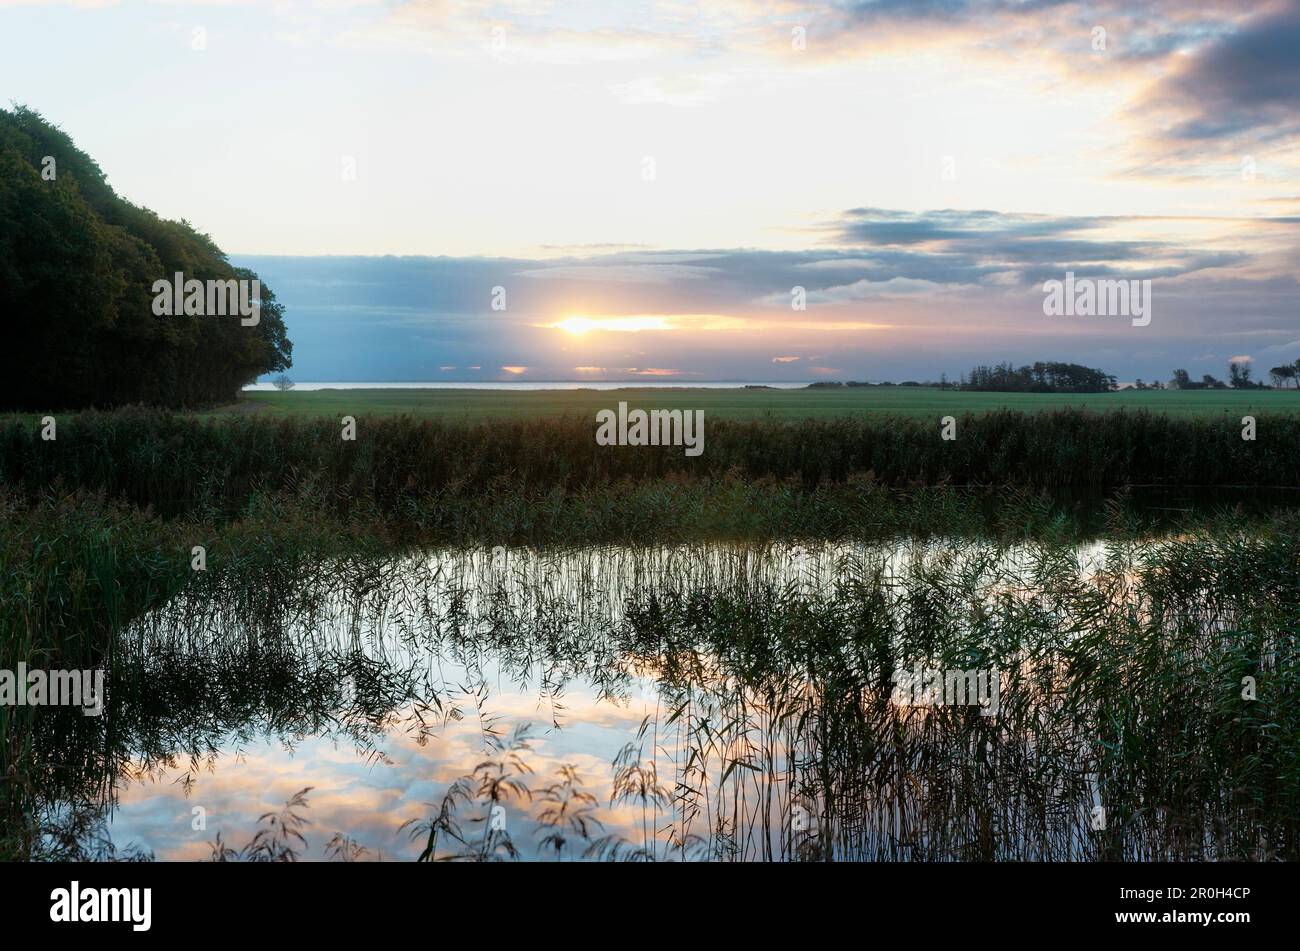 Étang avec roseau au lever du soleil, île de Langeland, Danemark, Europe Banque D'Images